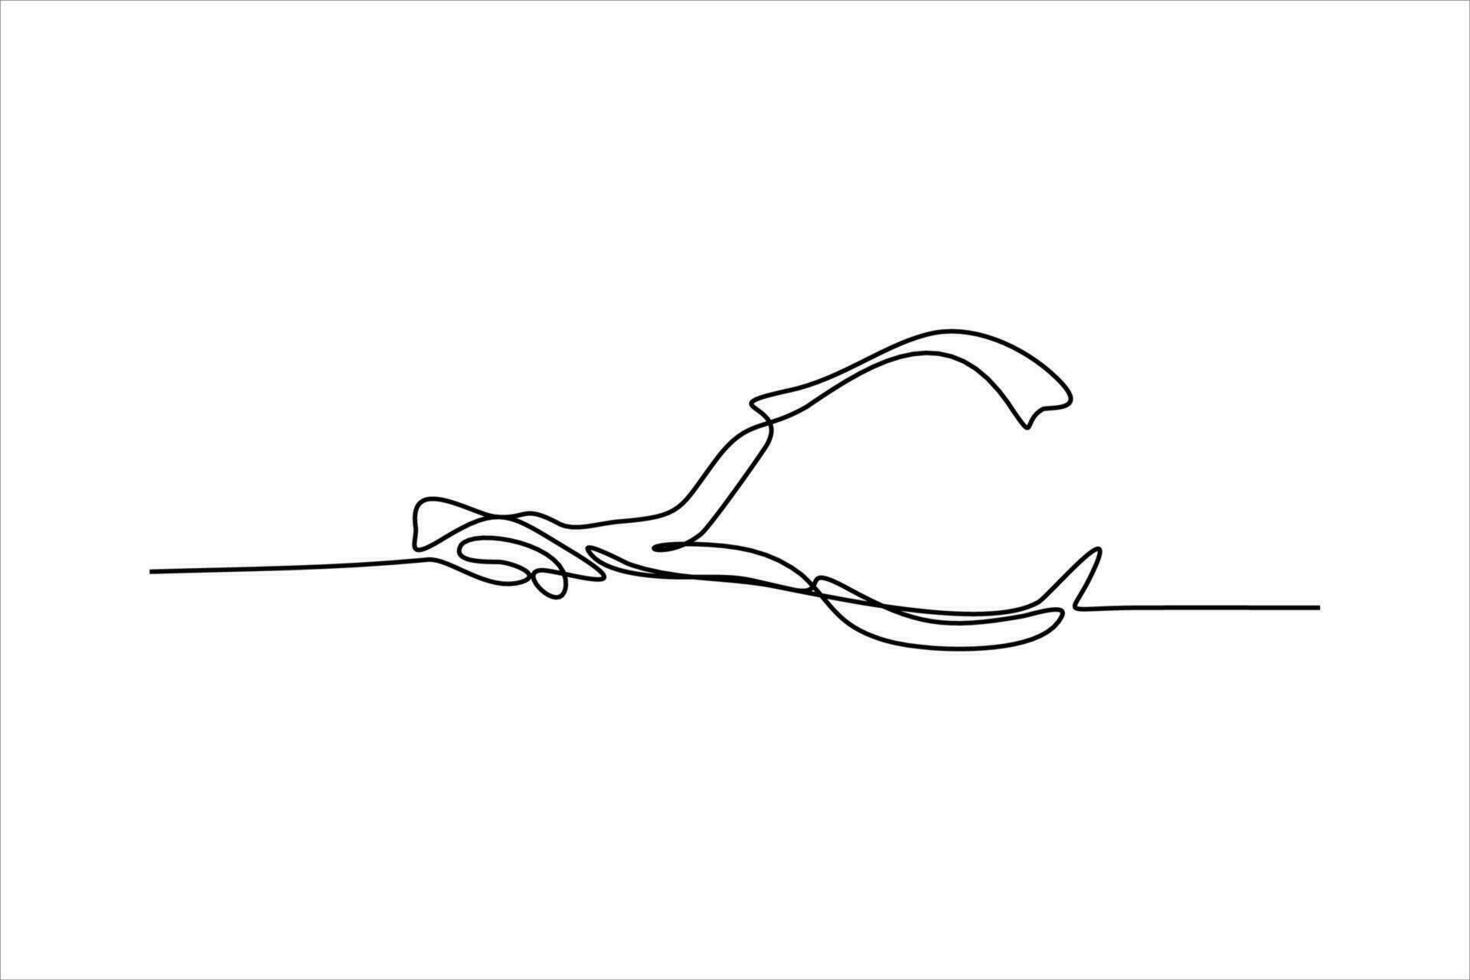 diver woman continuous line illustration vector